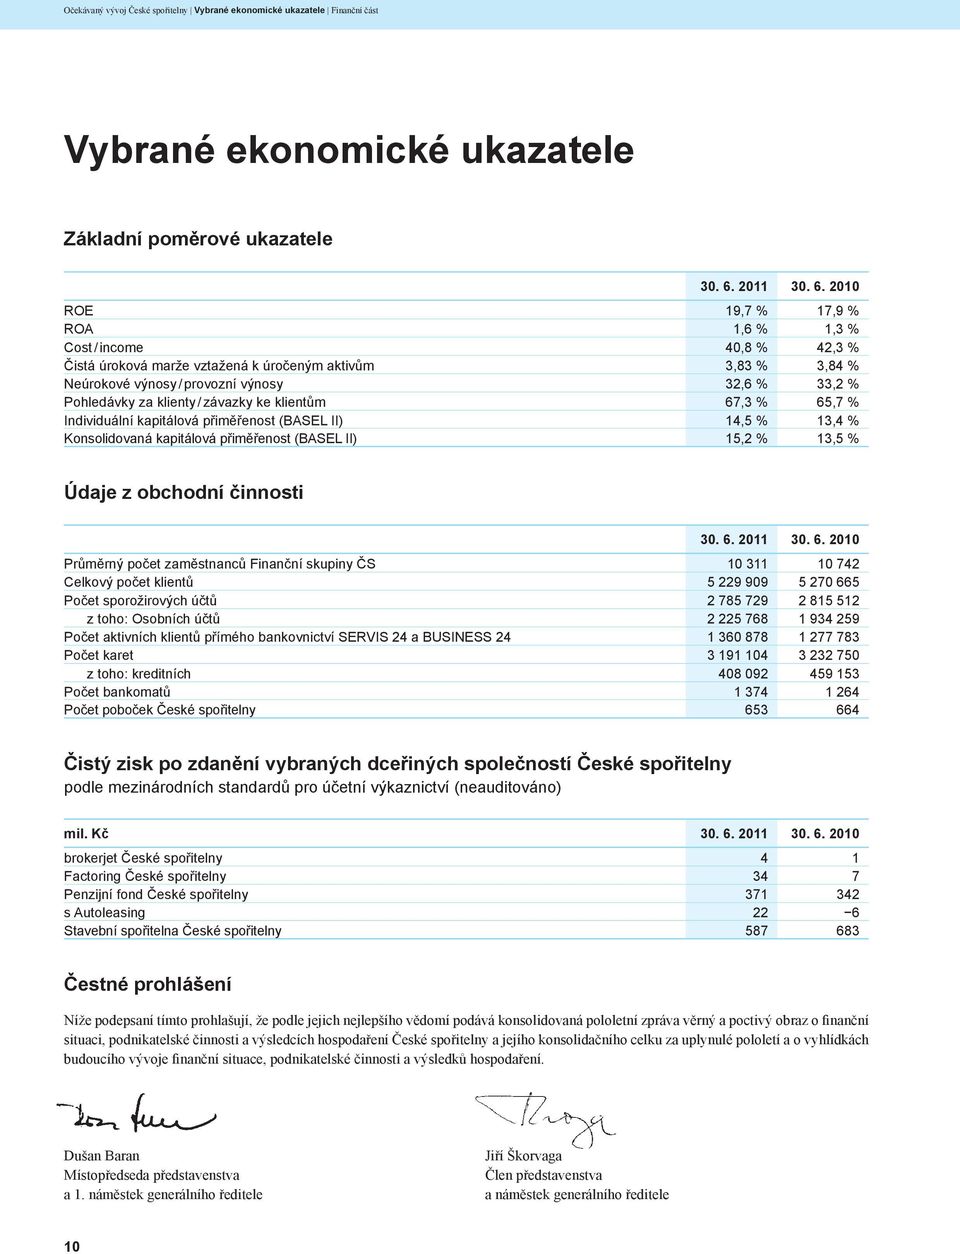 2010 ROE 19,7 % 17,9 % ROA 1,6 % 1,3 % Cost / income 40,8 % 42,3 % Čistá úroková marže vztažená k úročeným aktivům 3,83 % 3,84 % Neúrokové výnosy / provozní výnosy 32,6 % 33,2 % Pohledávky za klienty